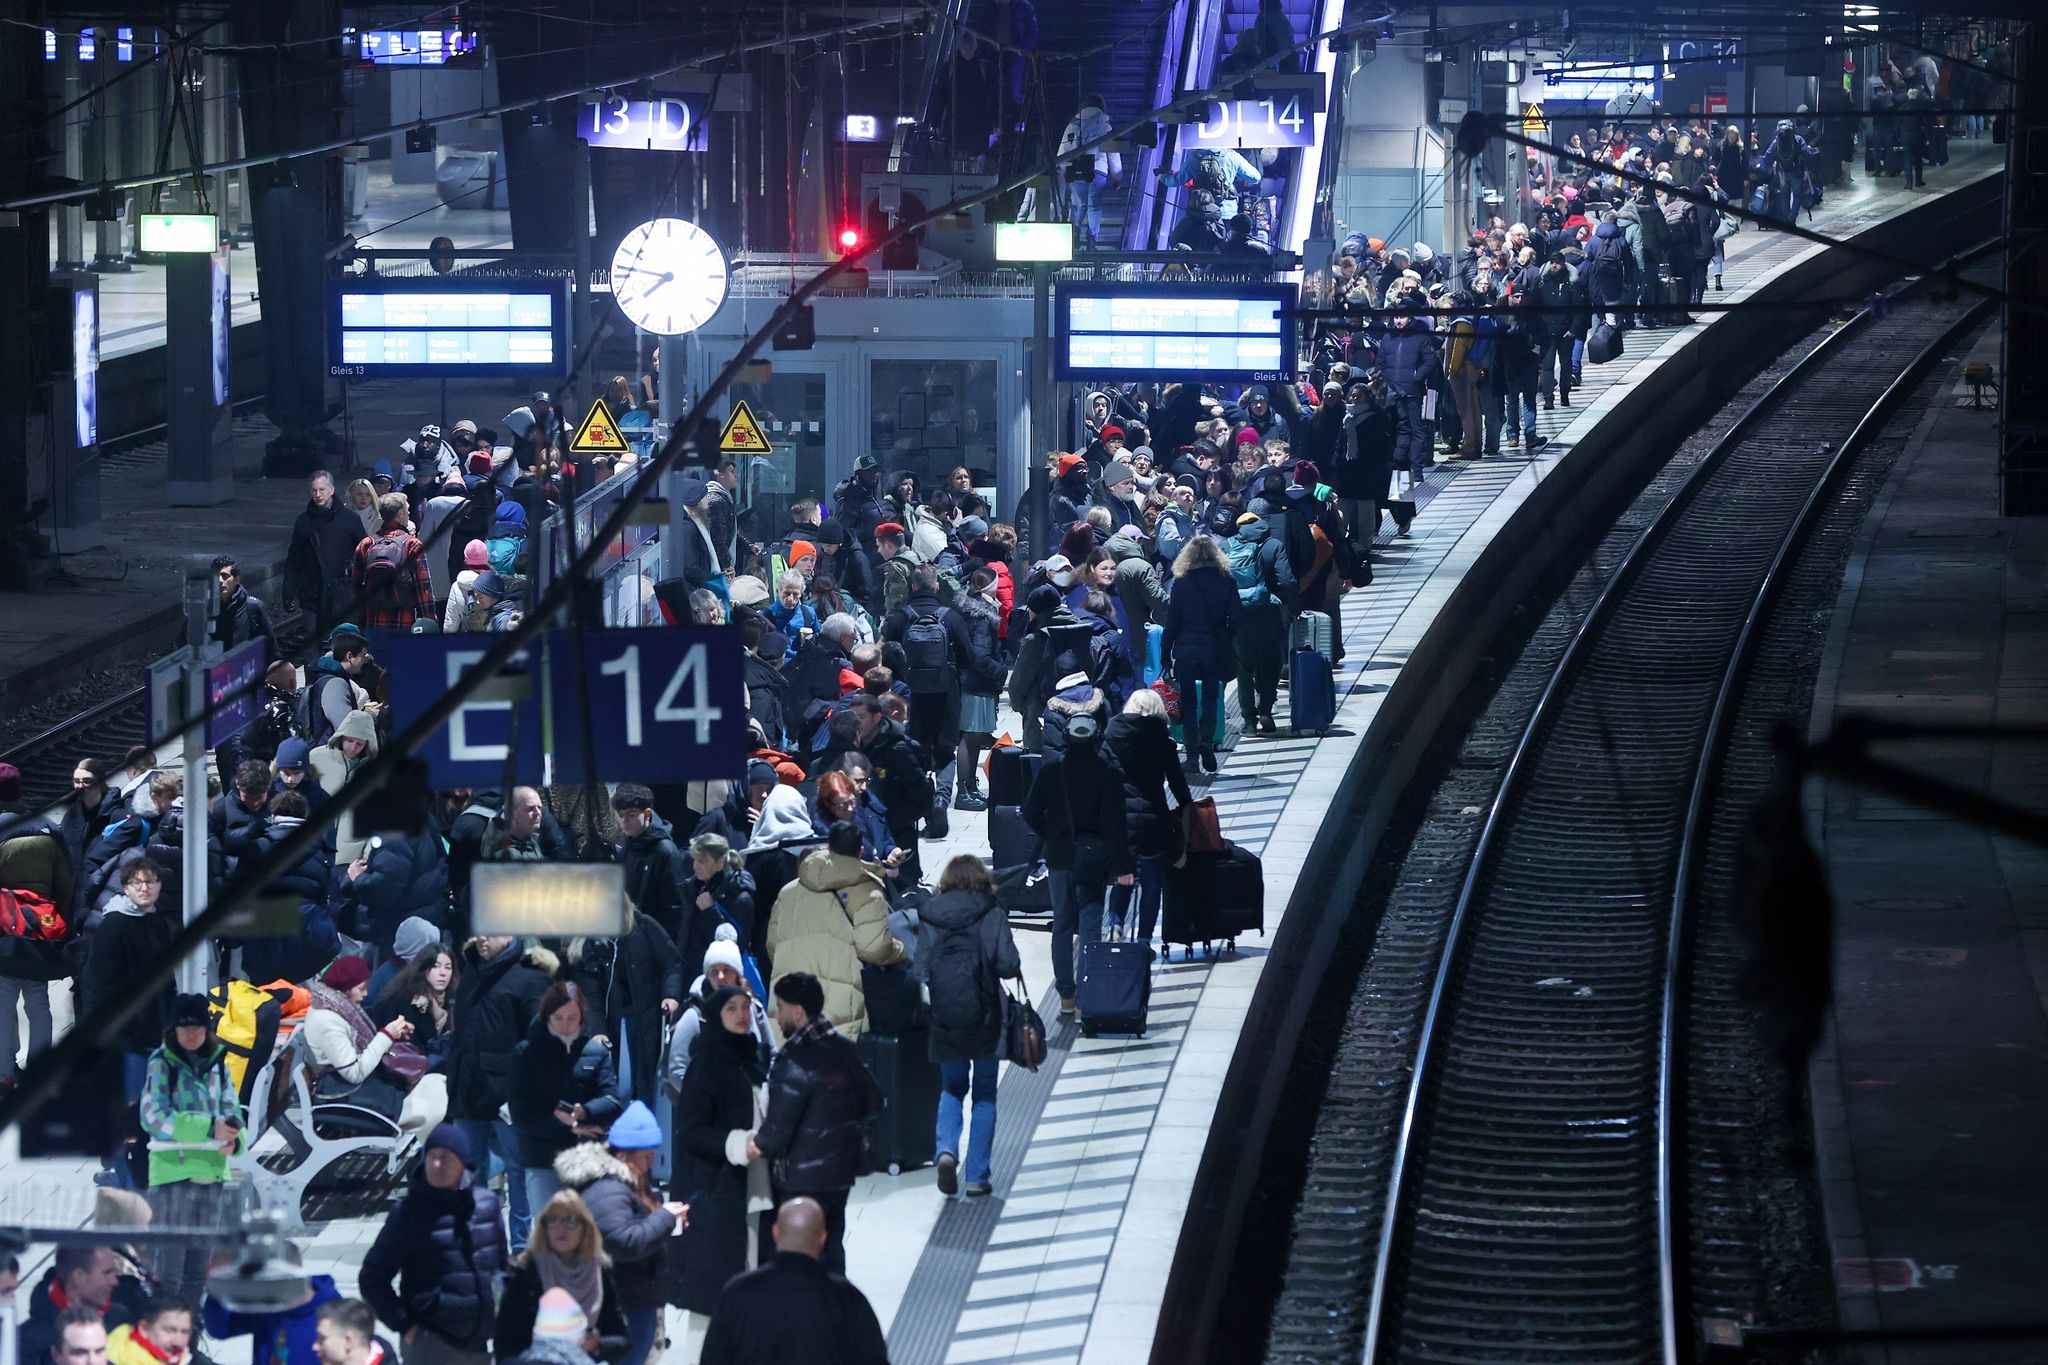 Viel los am Hamburger Hauptbahnhof nach Ende des Warnstreiks. Für das restliche Wochenende müssen sich Fahrgäste auf volle Züge einstellen.